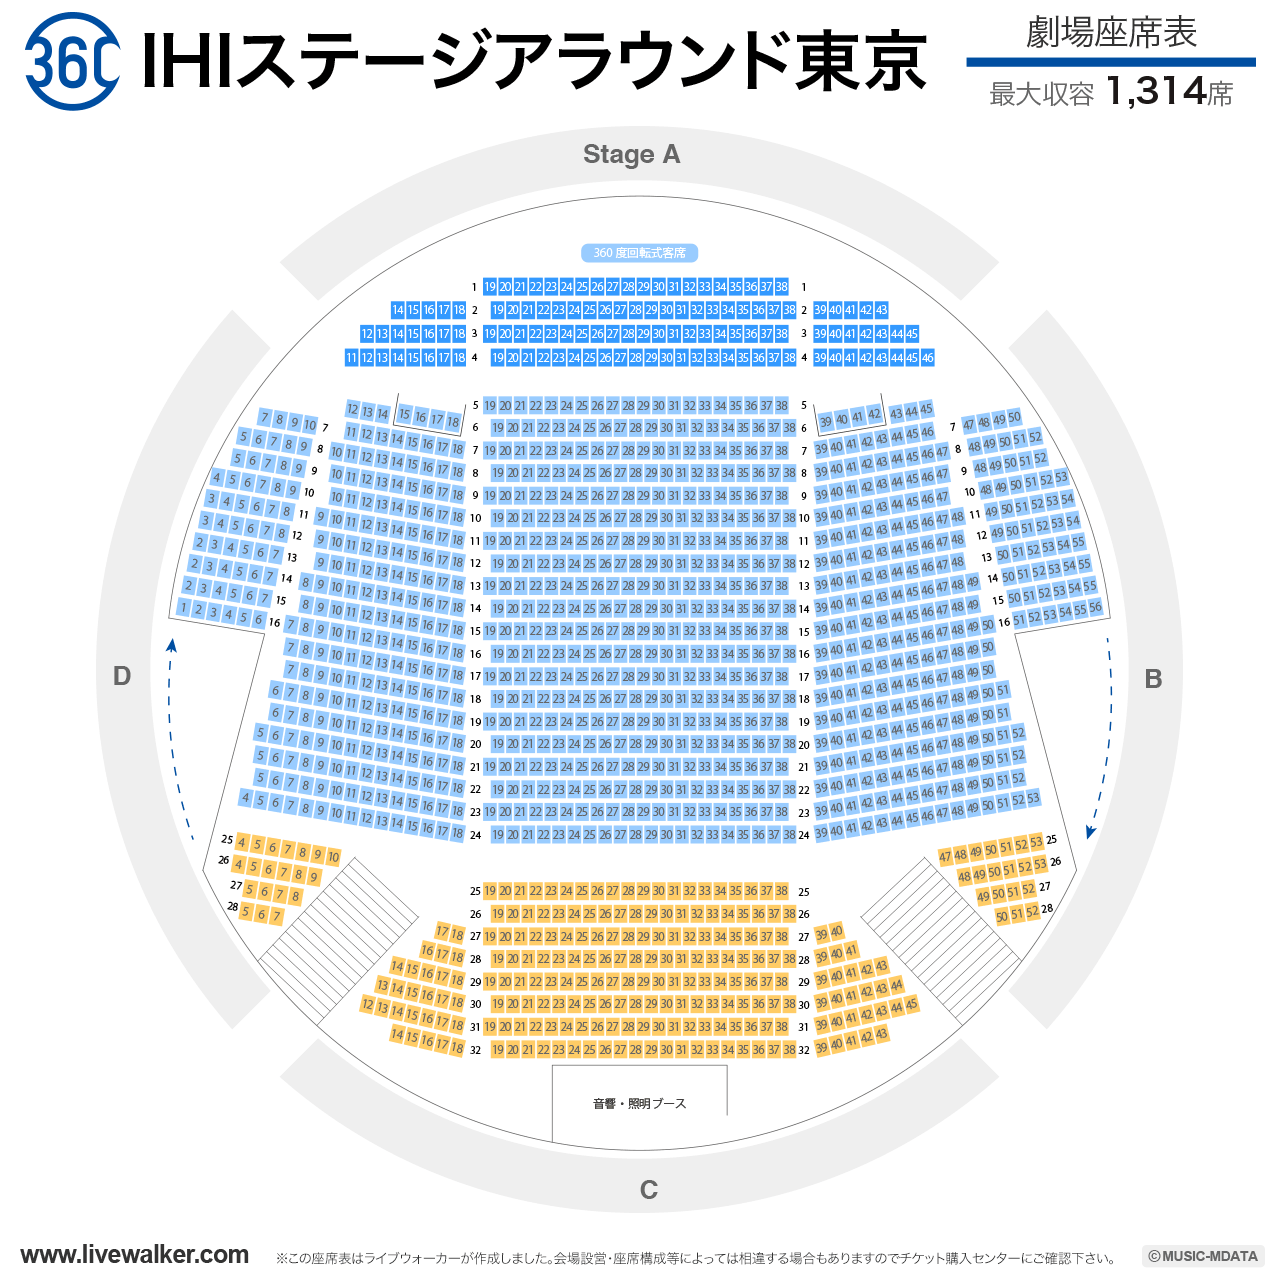 IHIステージアラウンド東京劇場の座席表